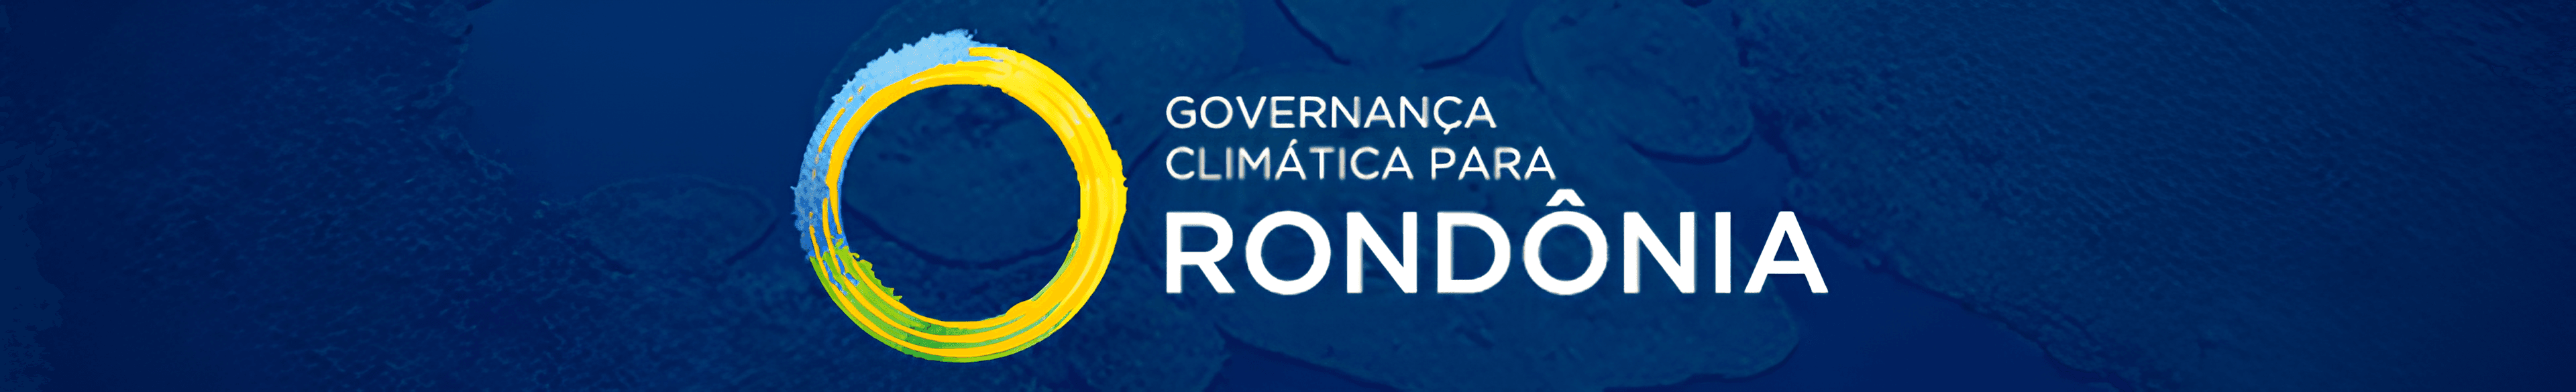 Logo da Gorvanança Climática para Rondônia